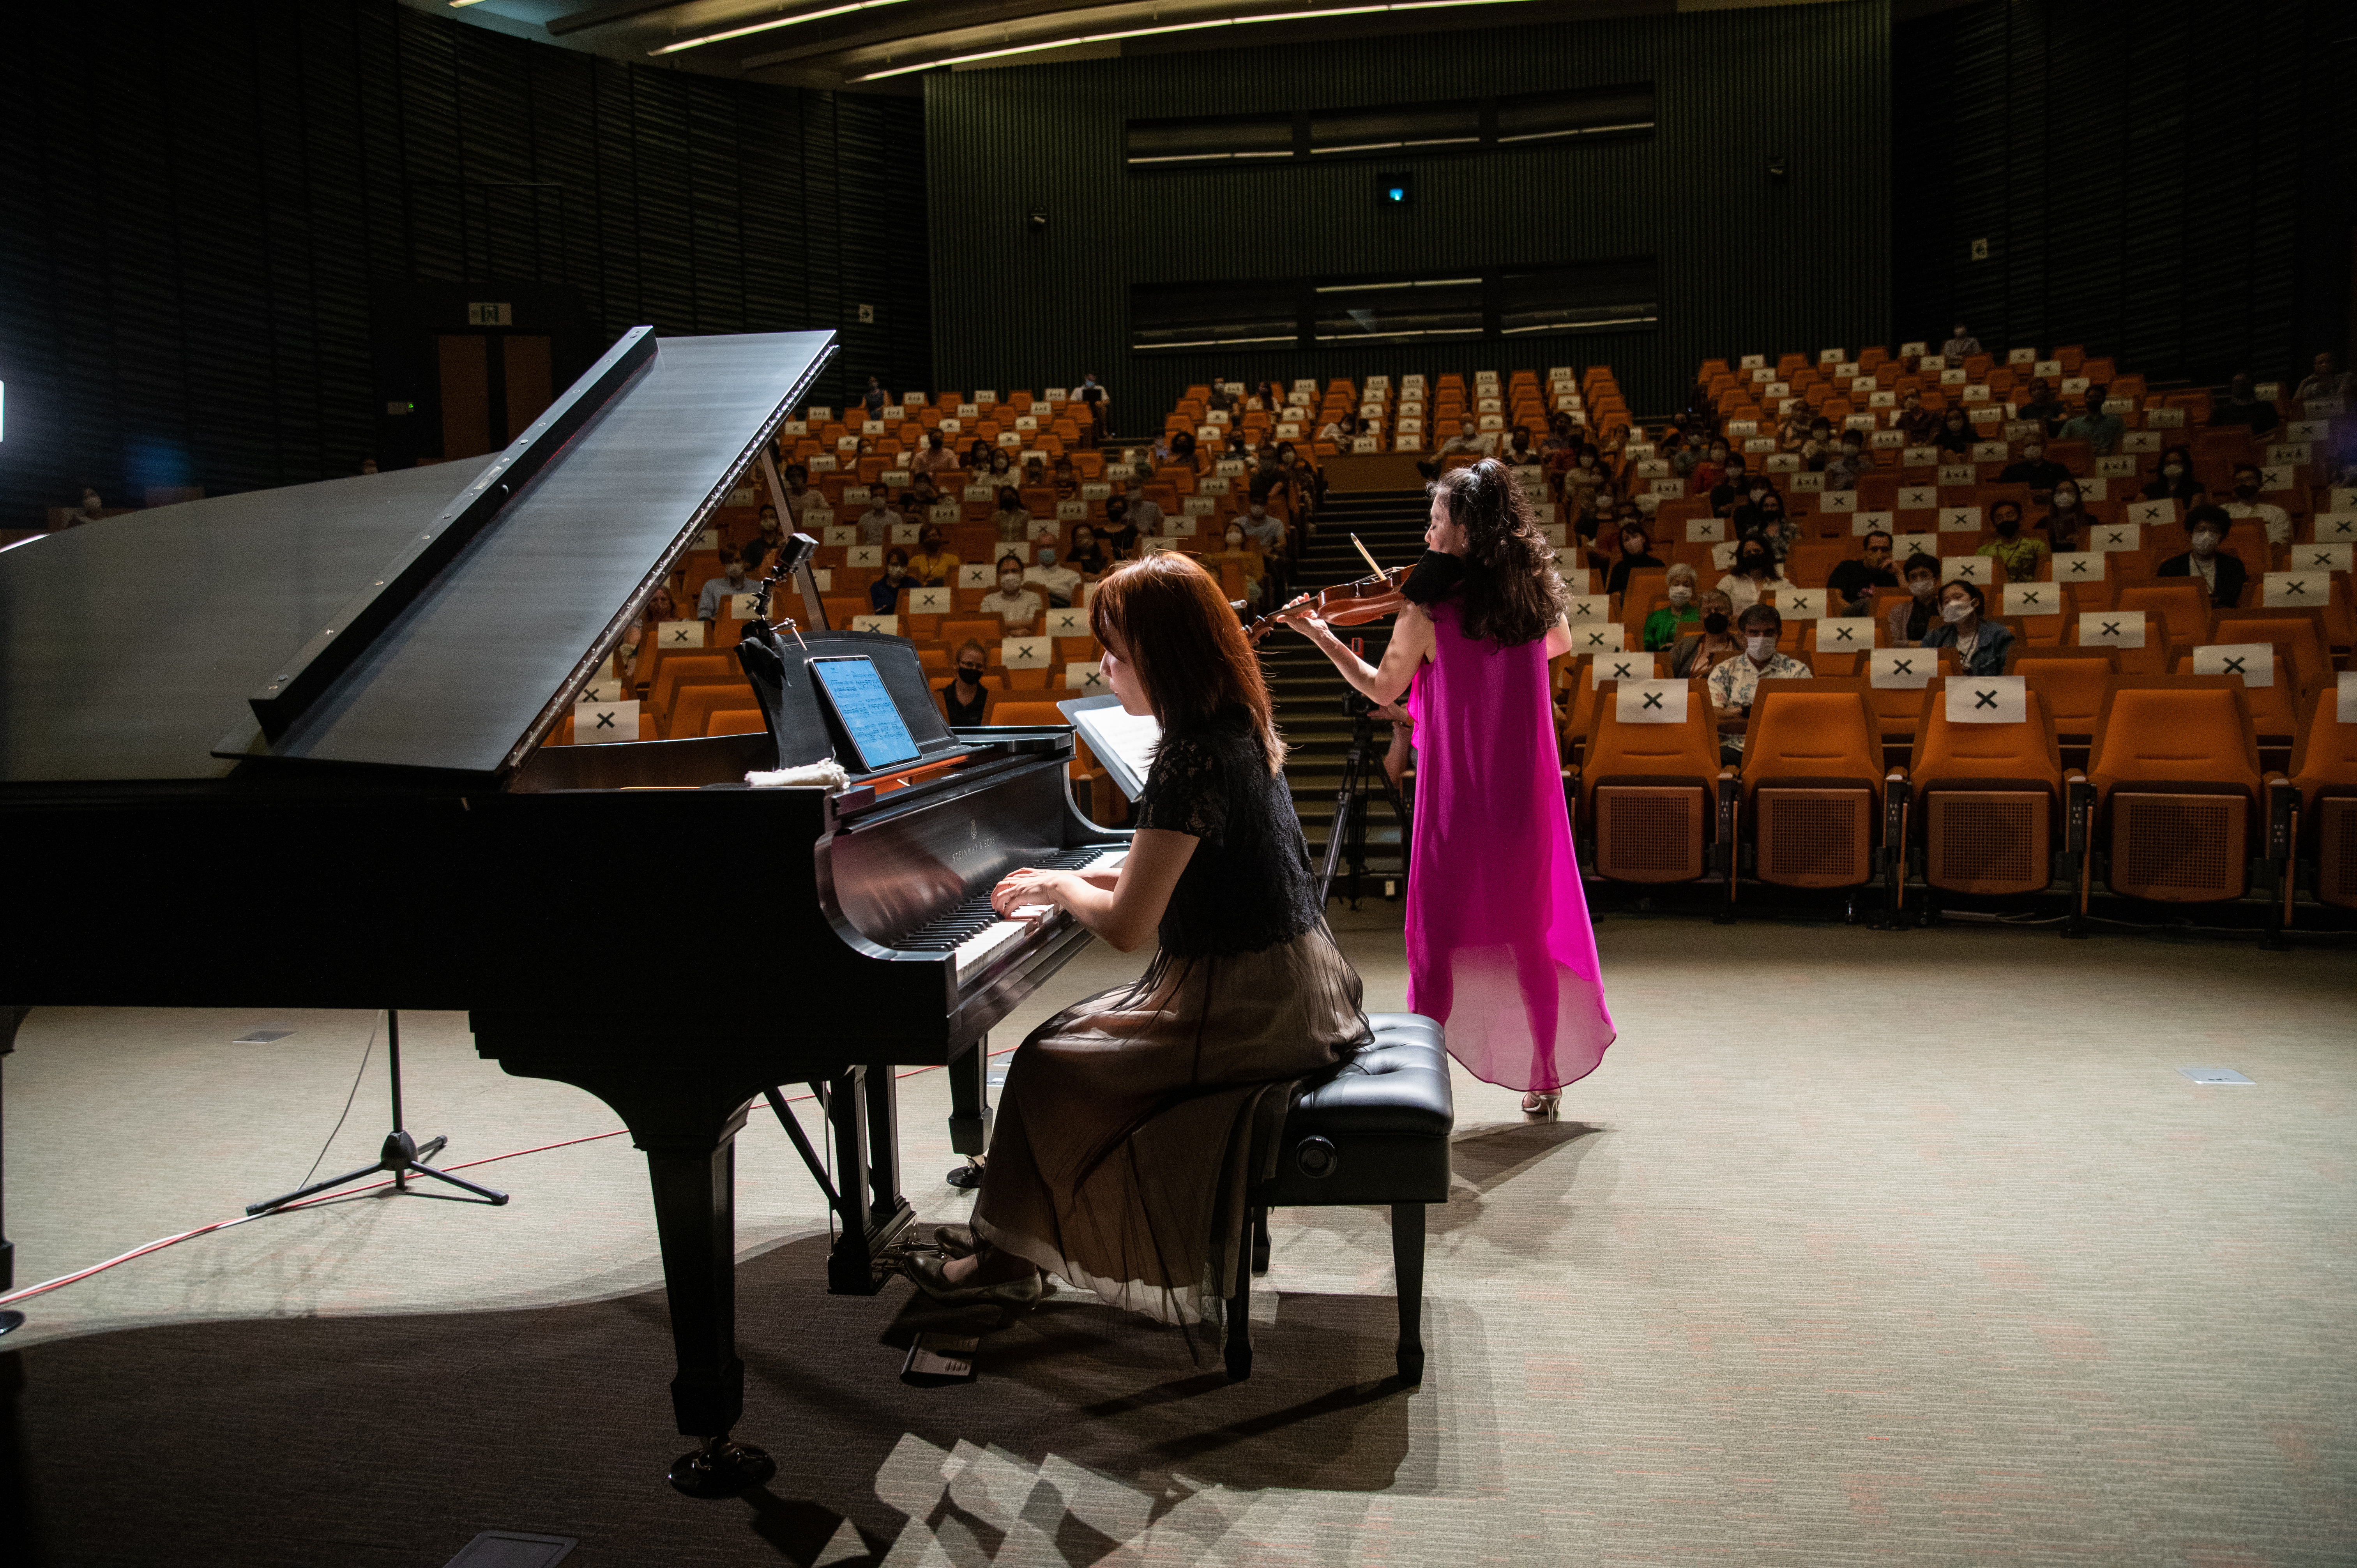 2021年11月2日、OIST財団から寄贈されたヴィンテージスタインウェイピアノで、ピアニスト大藪祐歌さんがヴァイオリニスト加野景子さんの伴奏を行った。